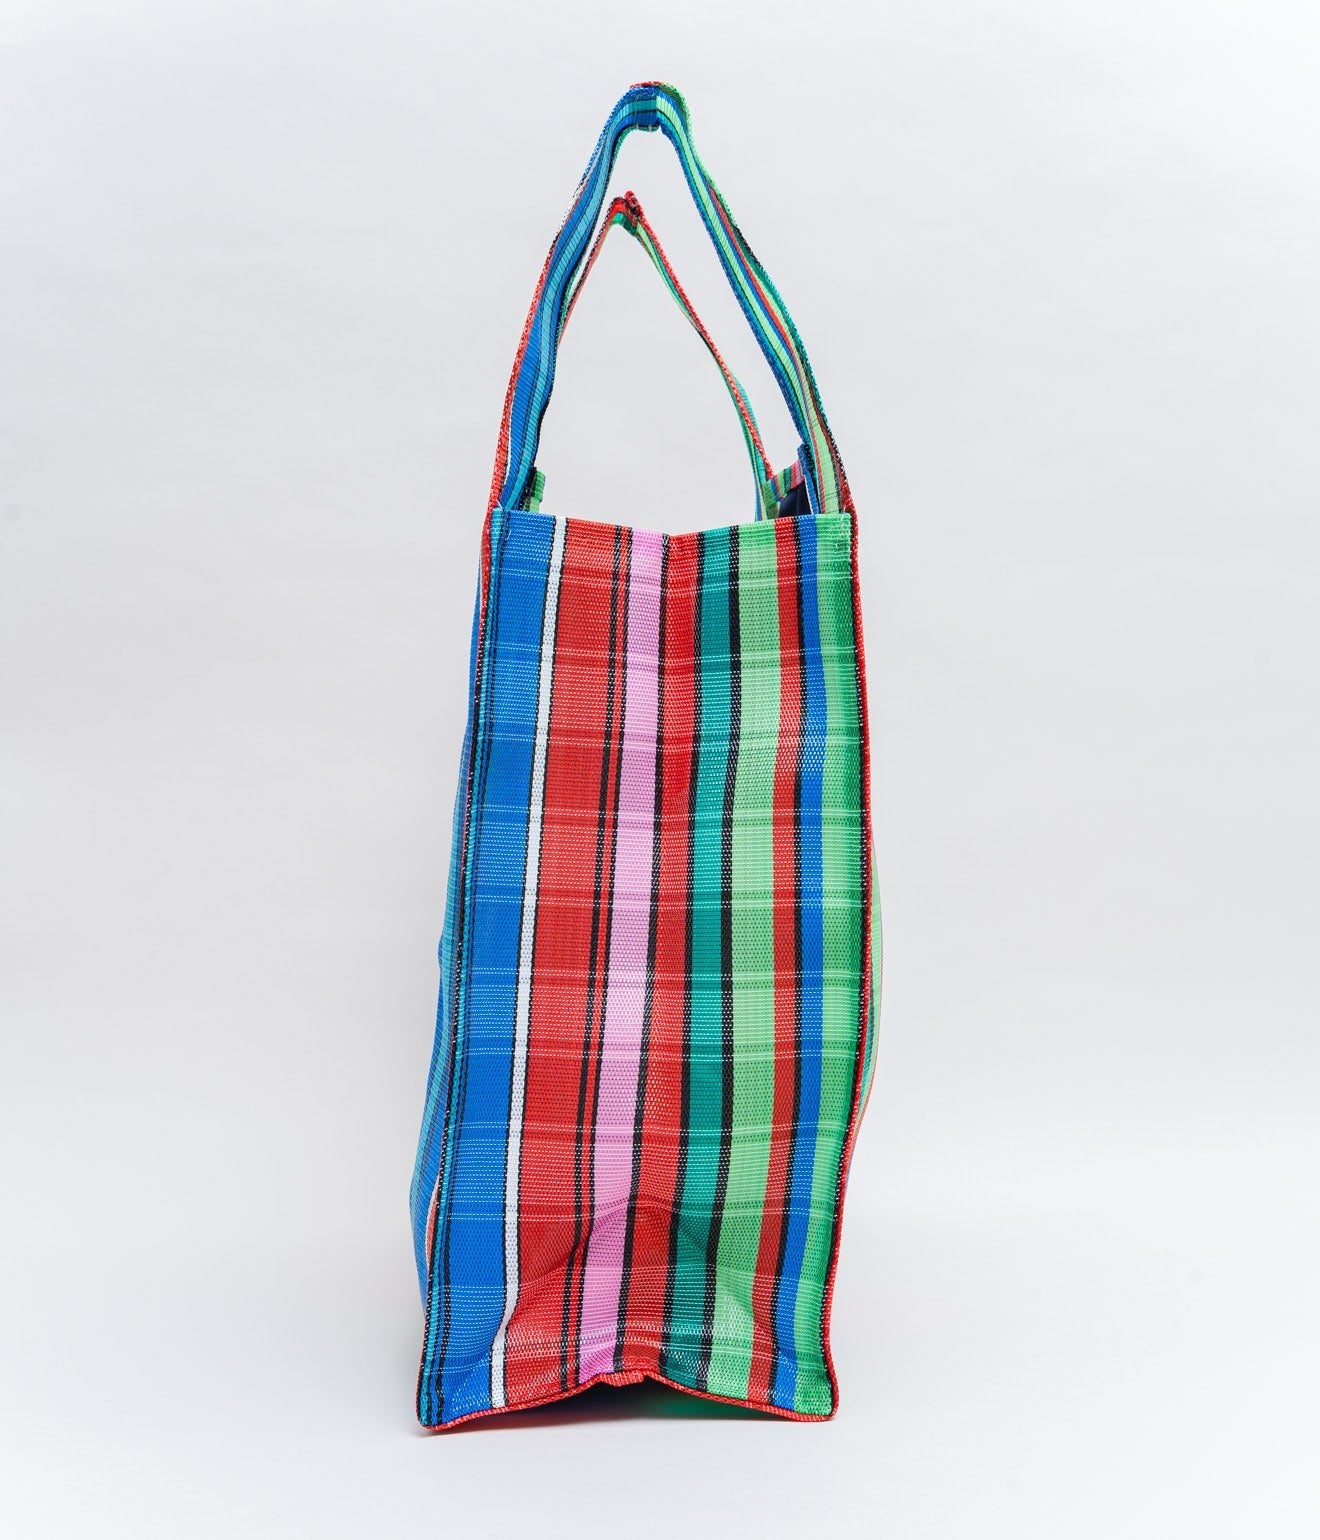 BONCHEY ”Shopping bag Medium